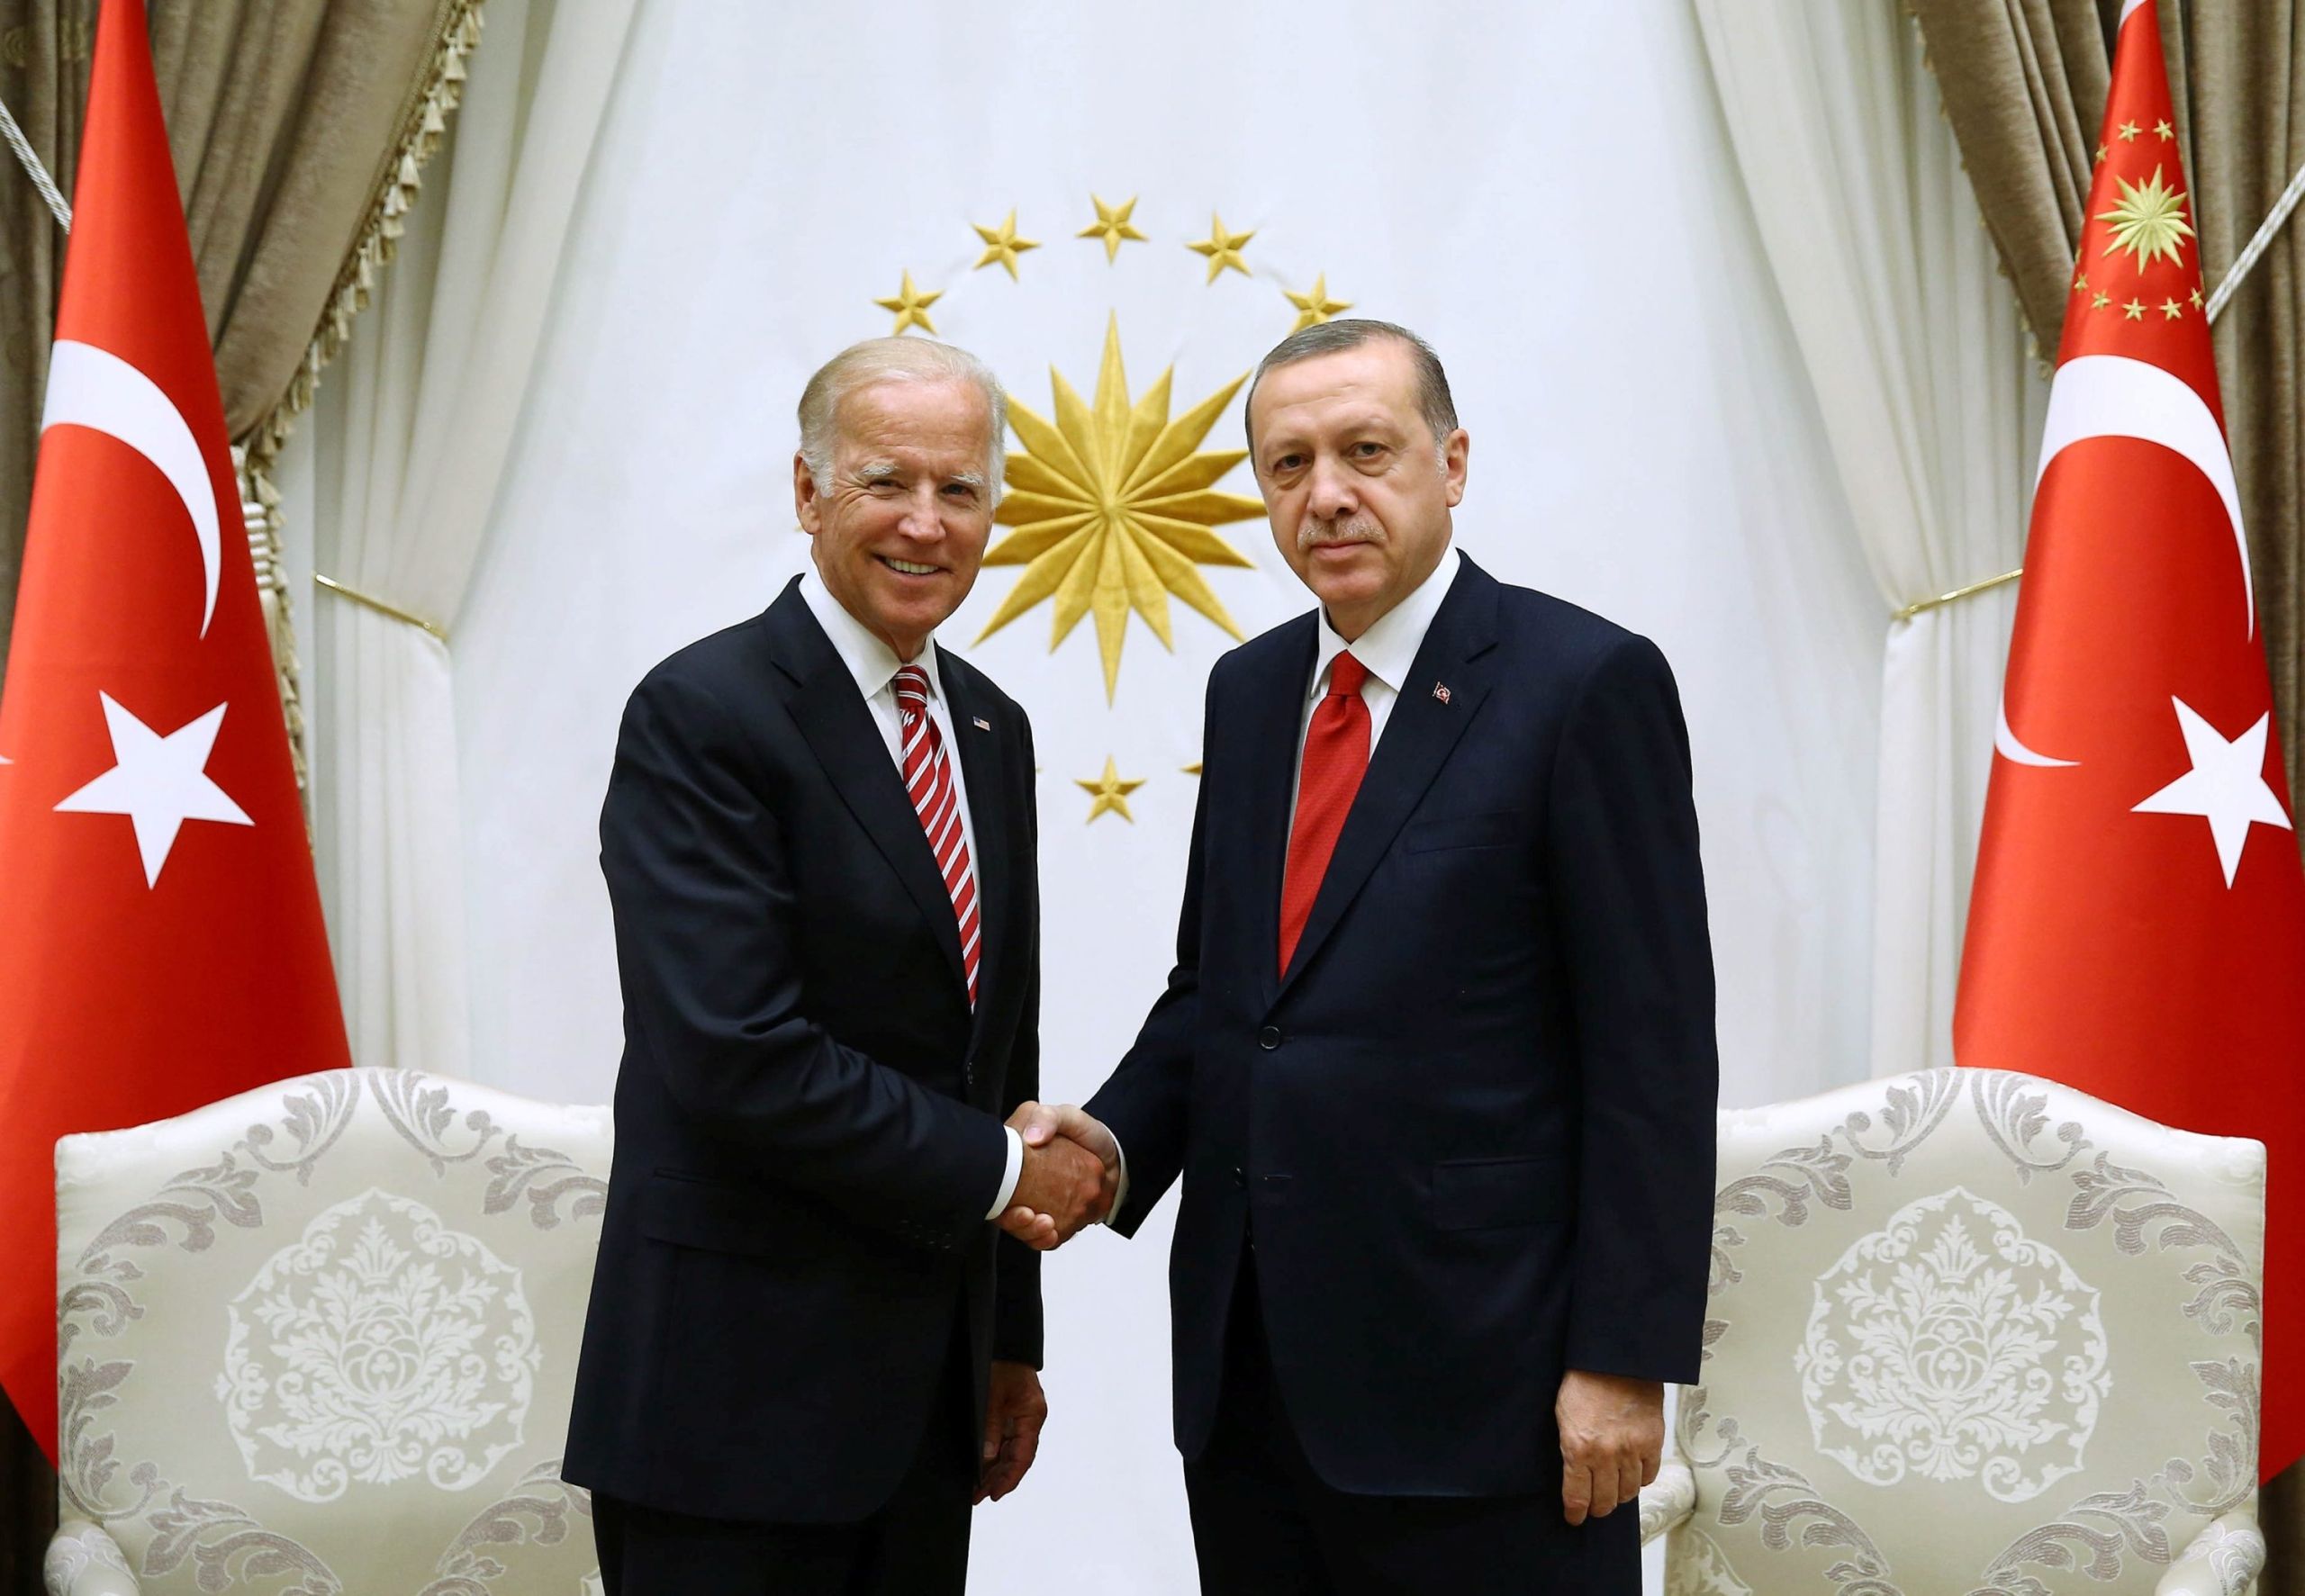 Ερντογάν – Μπάιντεν επικοινωνία: Βρήκε ευκαιρία για τα… δικά του θέματα ο Τούρκος πρόεδρος